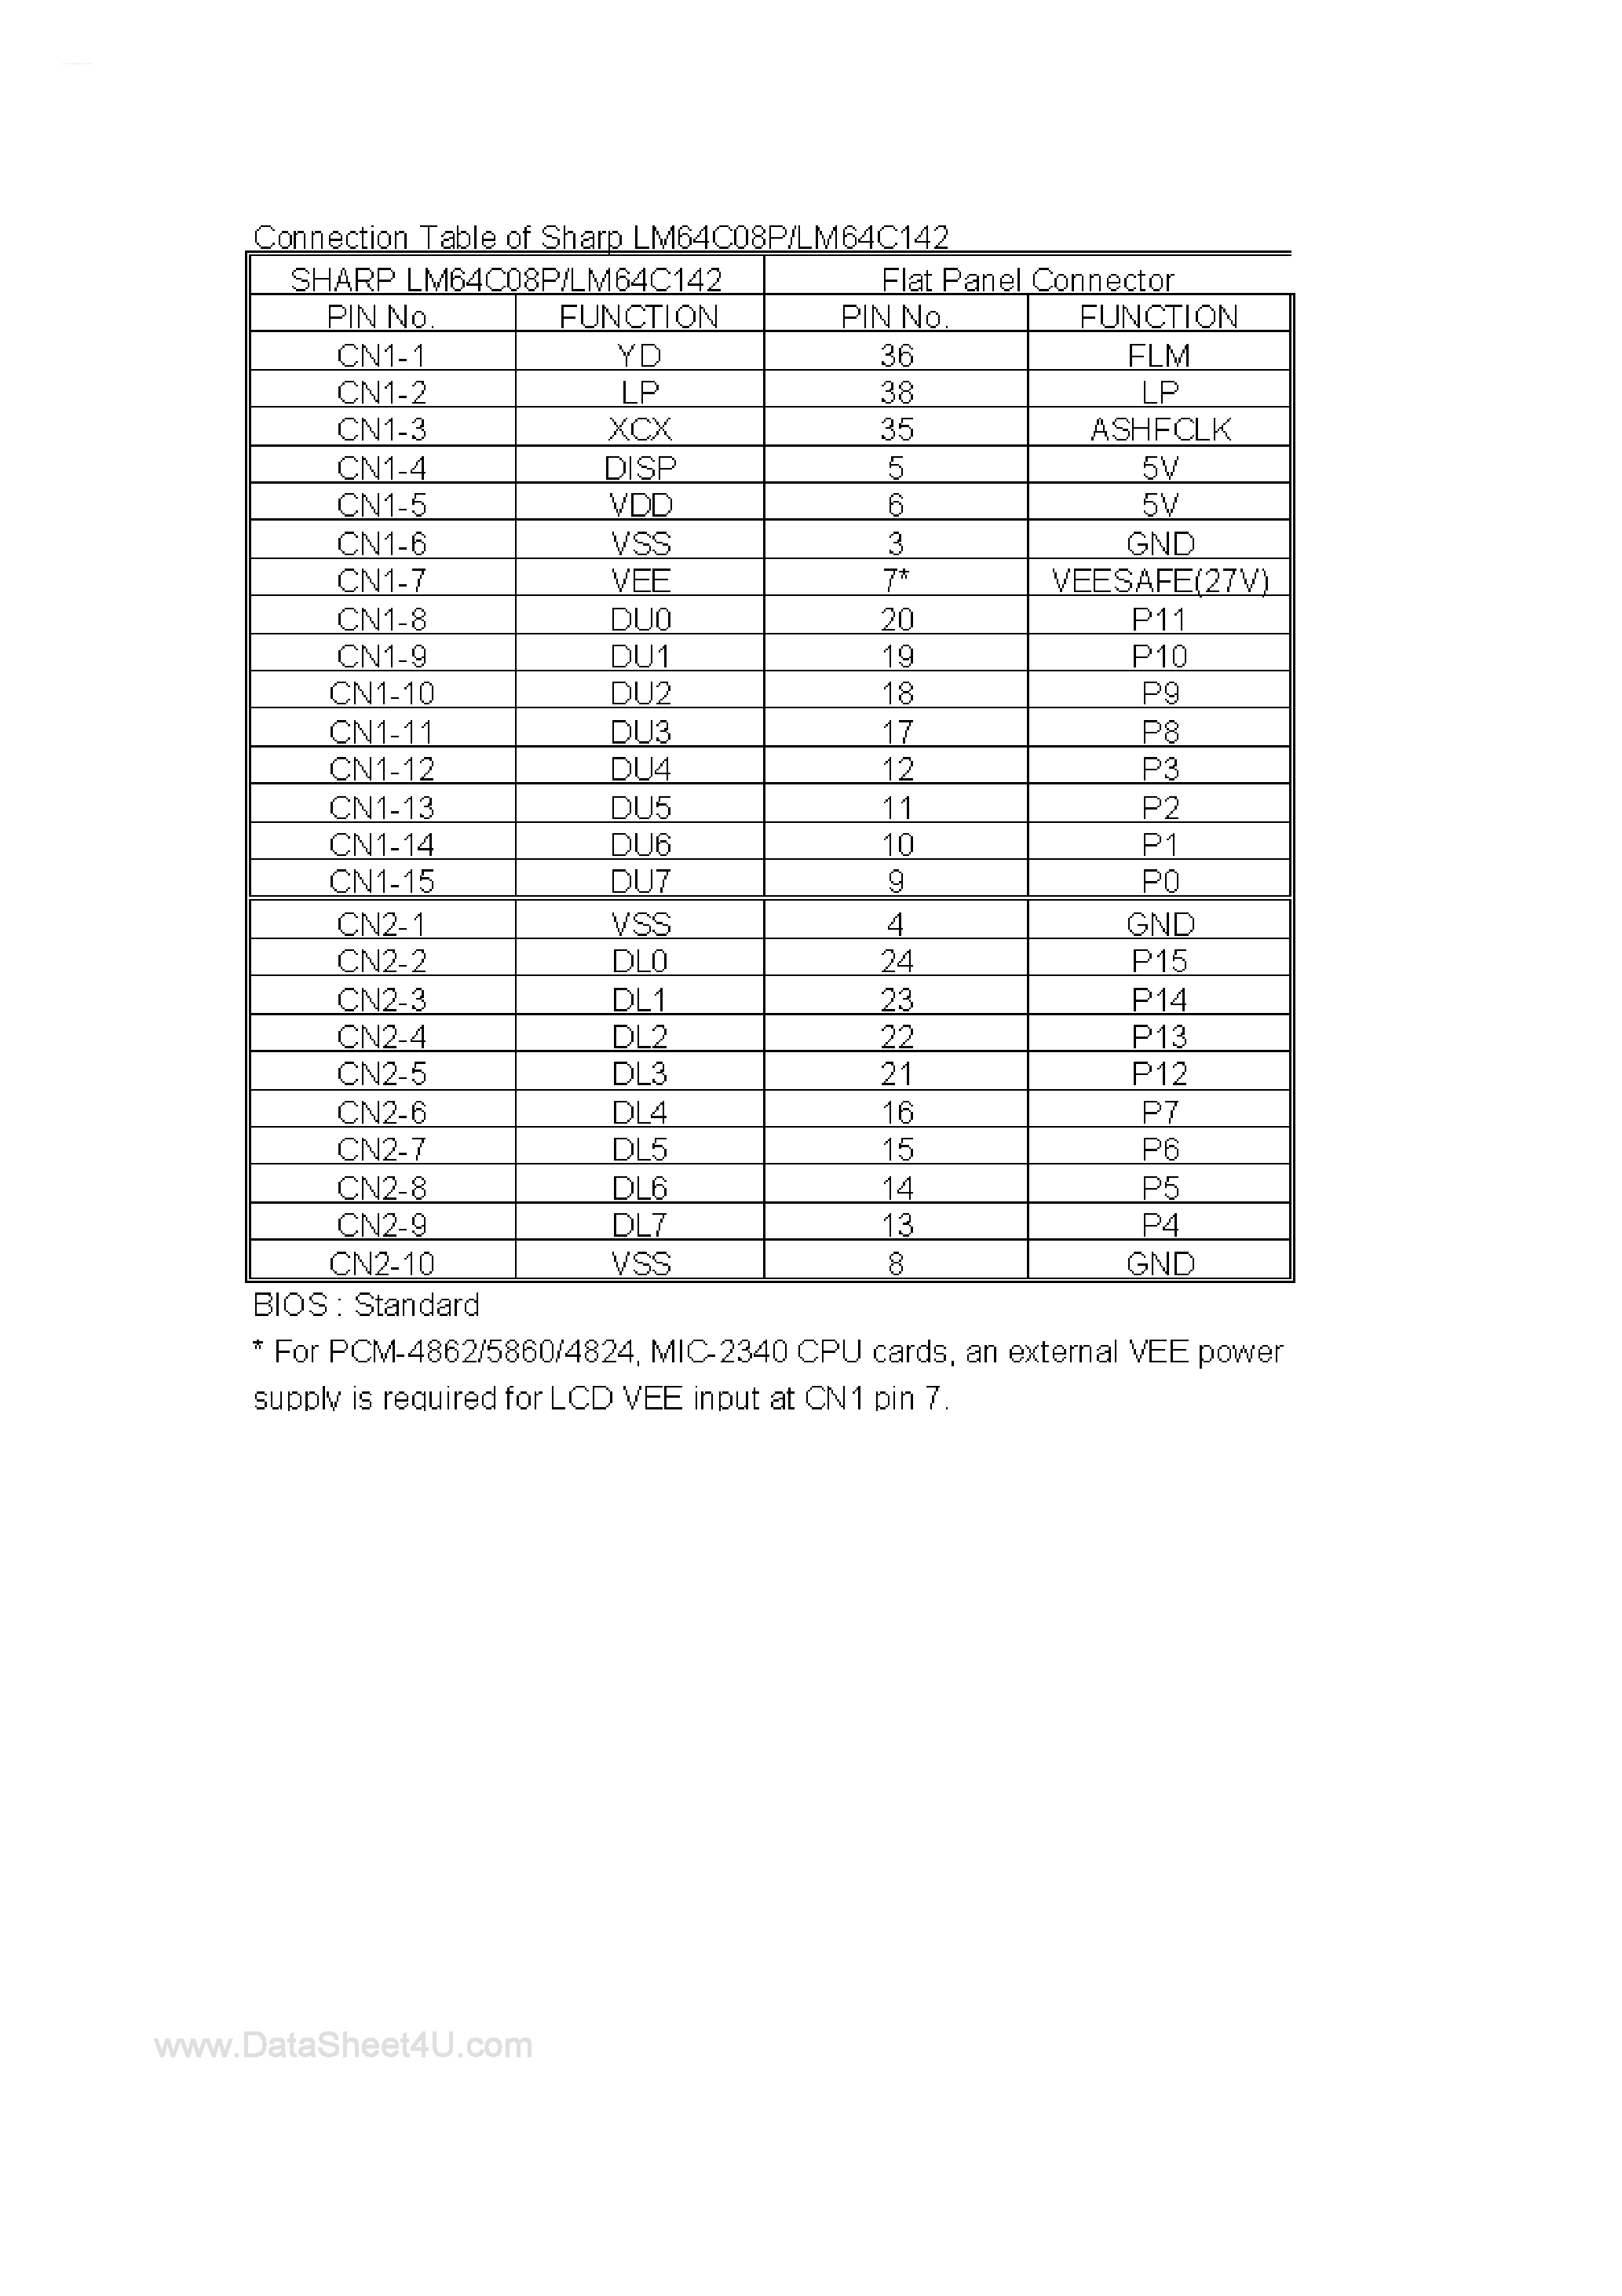 Даташит LM64C08P - (LM64C08P / LM64C142) Connection Table страница 1